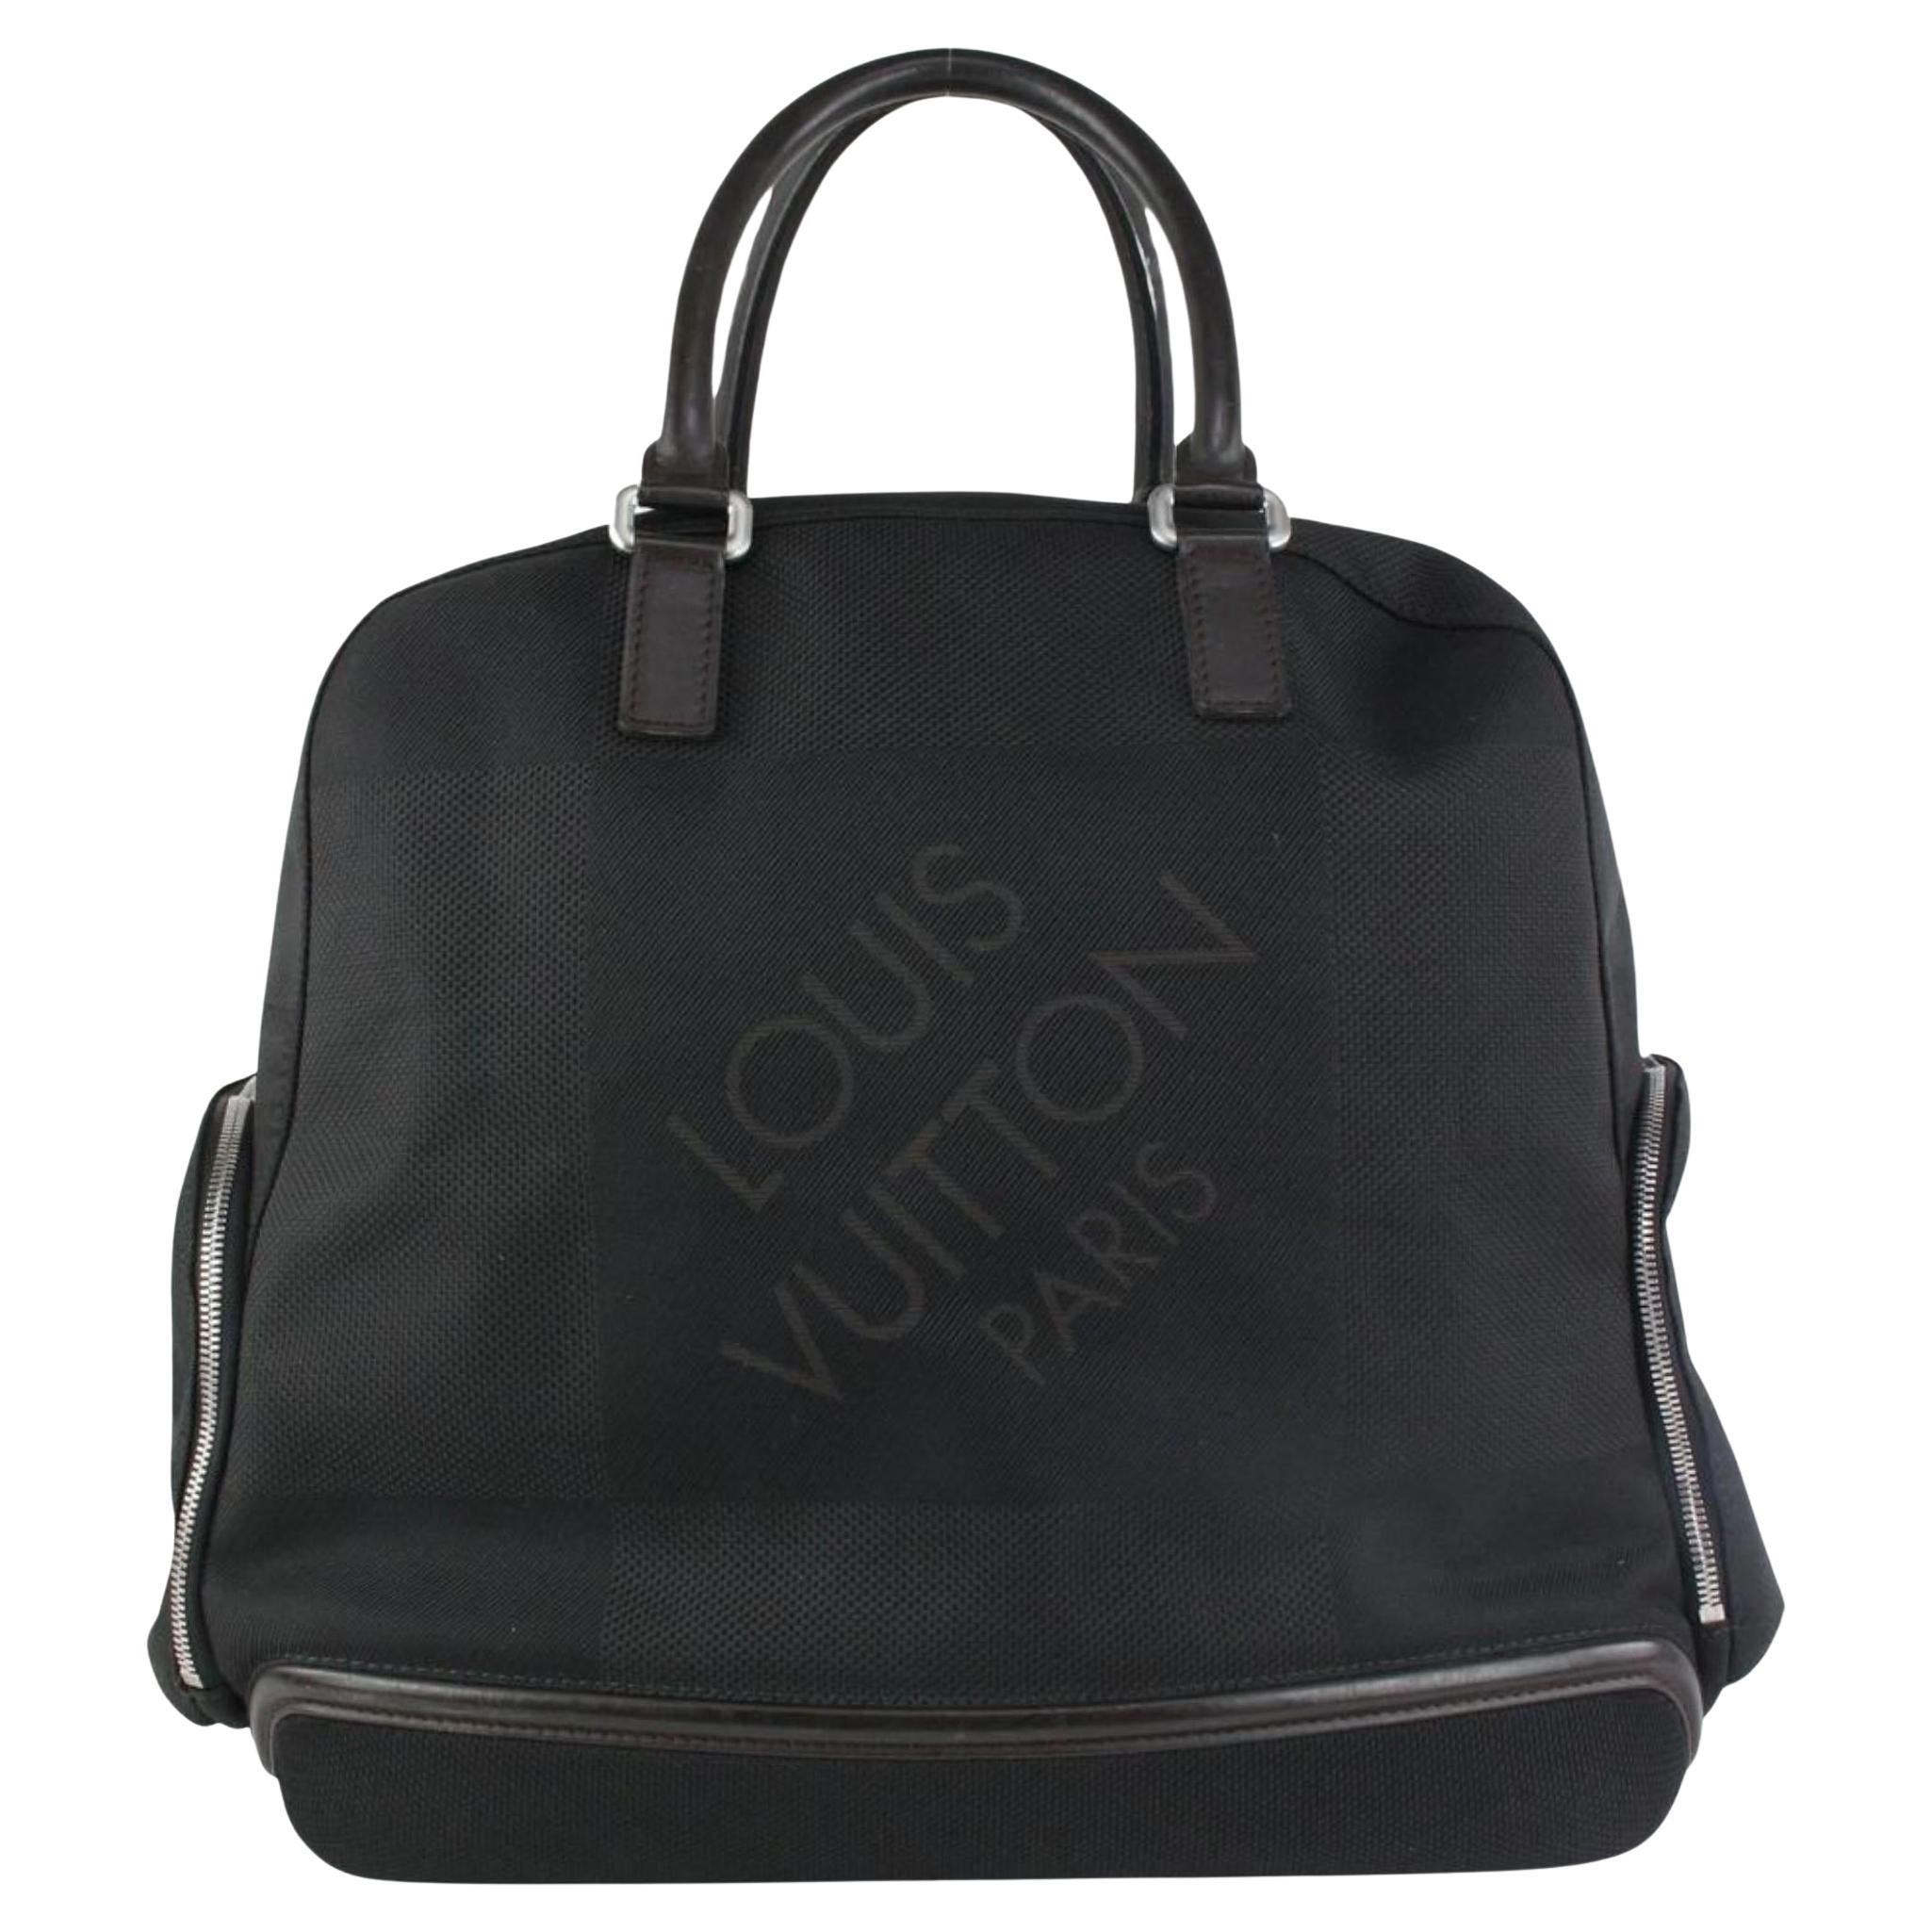 Louis Vuitton Black Damier Geant Aventurier Polaire Travel Bag 122lv14